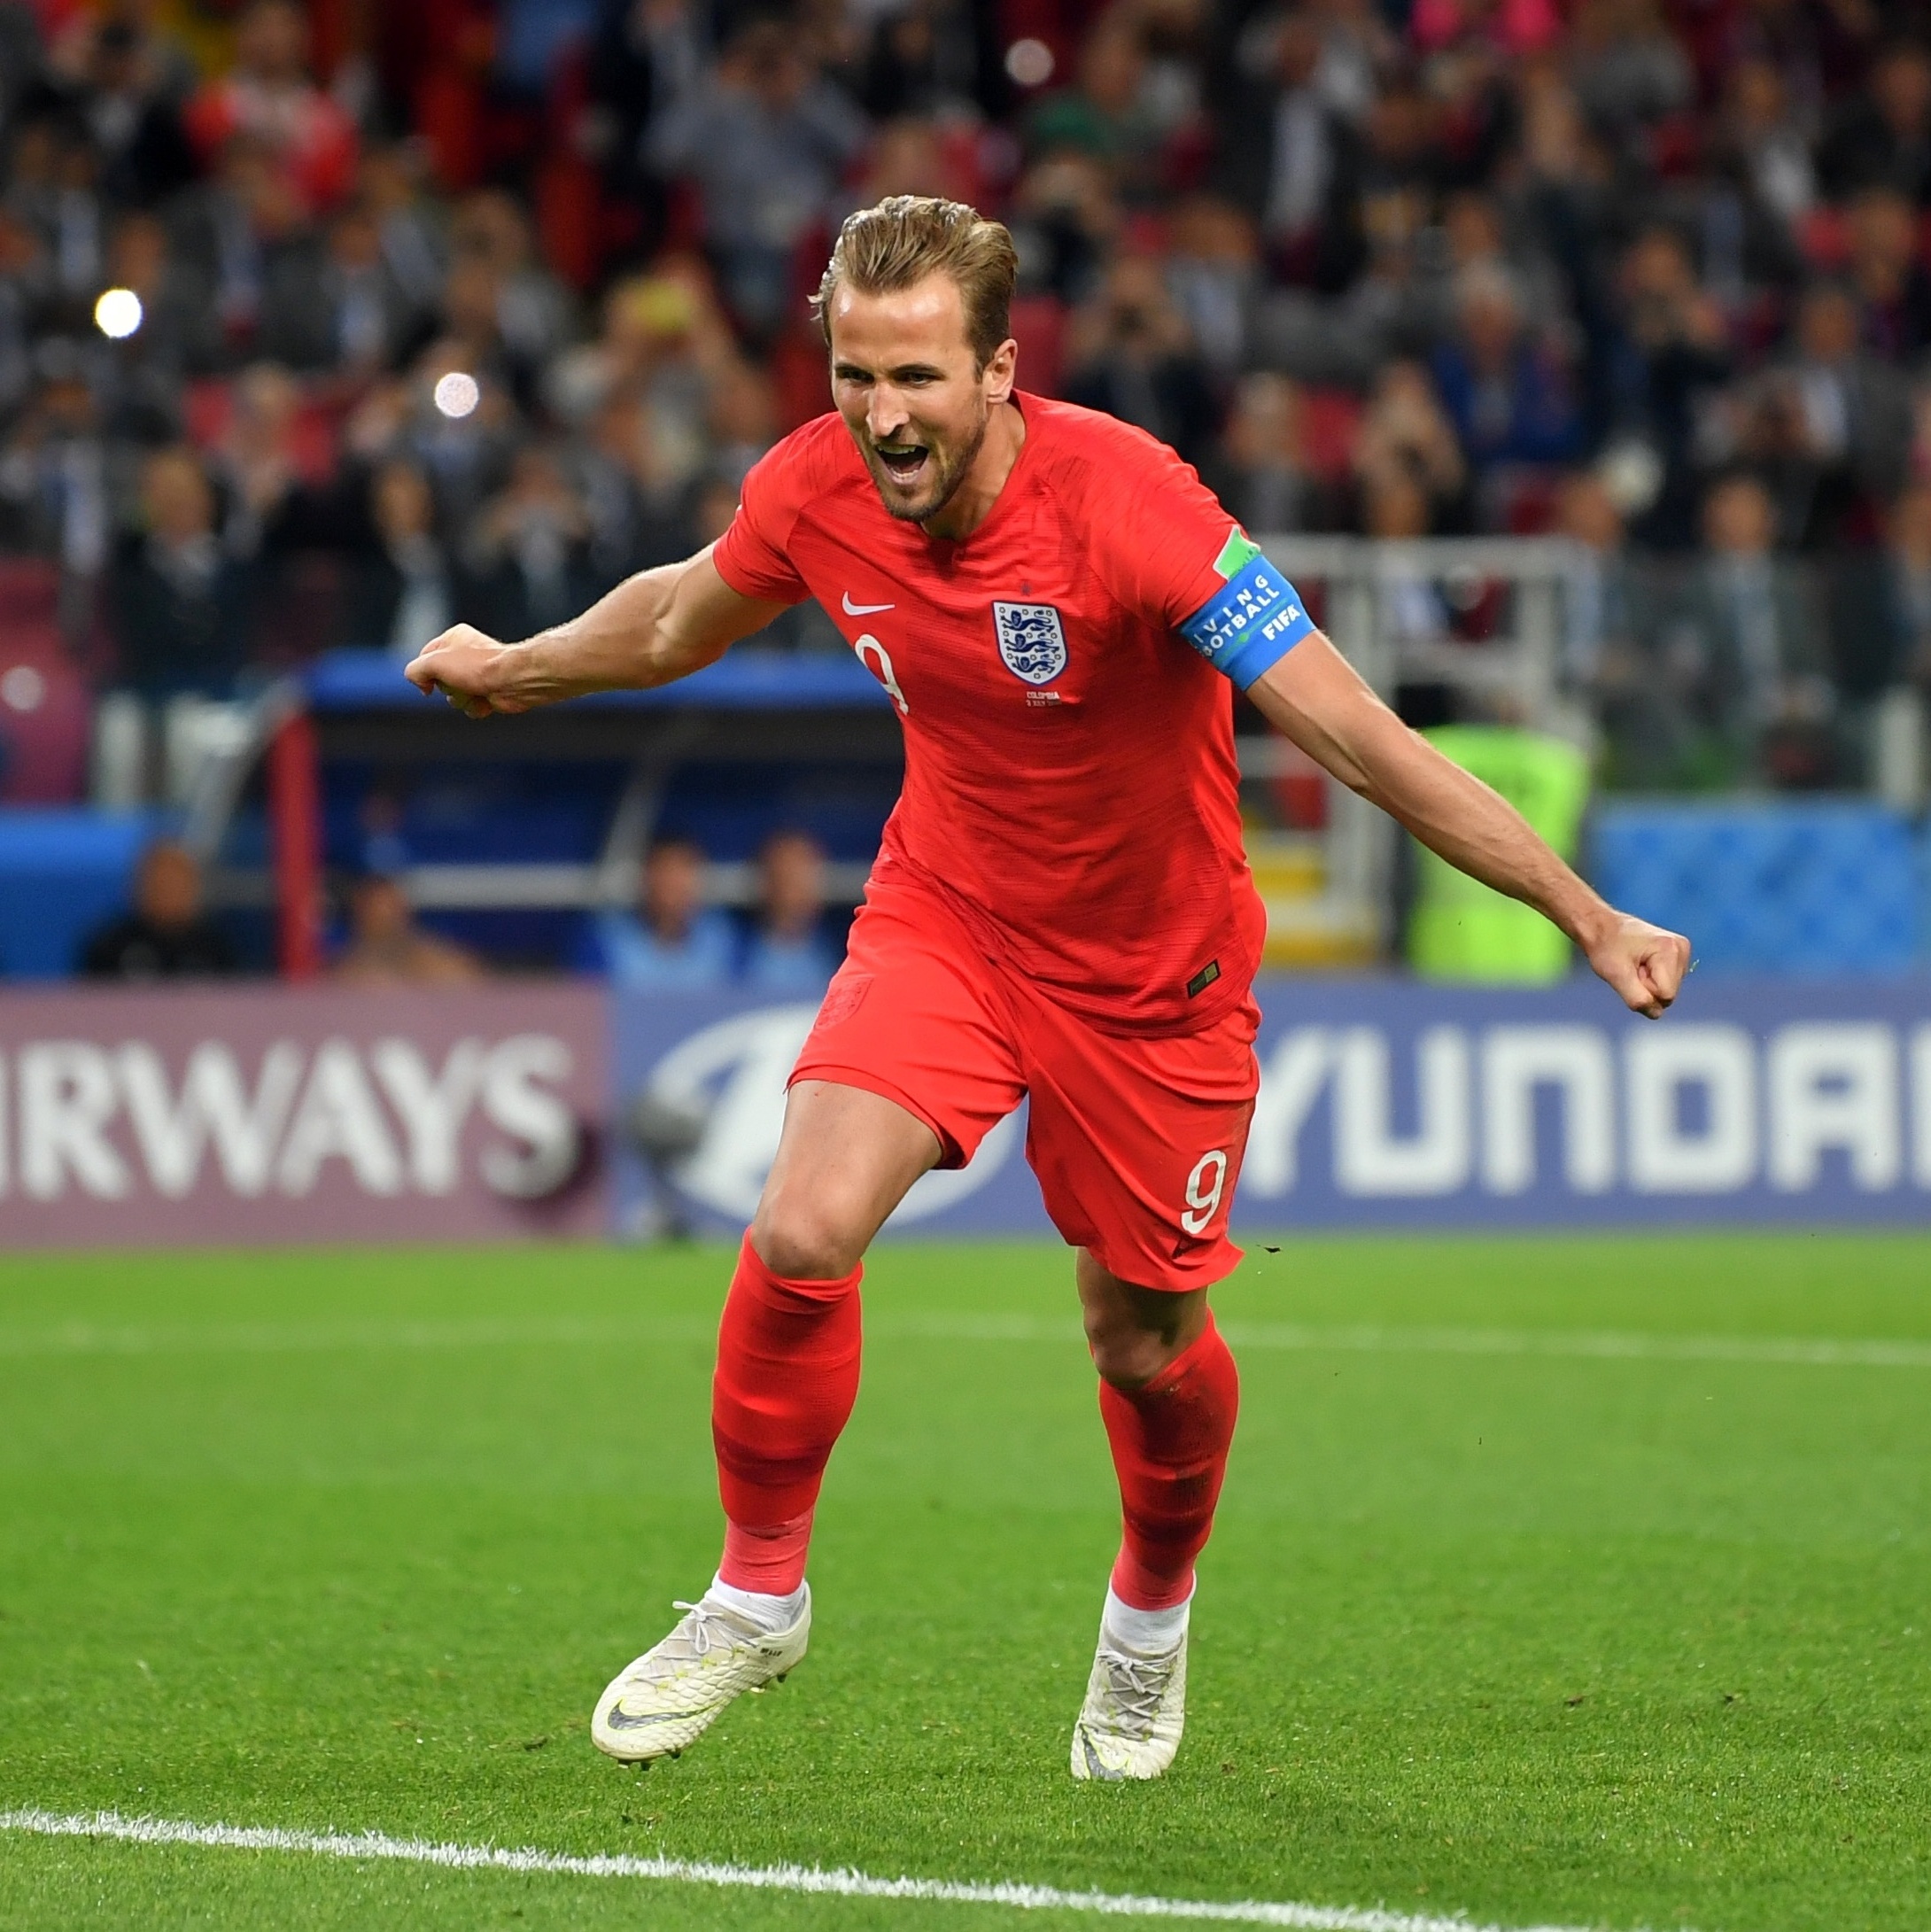 Com seis gols, inglês Kane termina Copa como artilheiro e repete feito de  Lineker - Superesportes